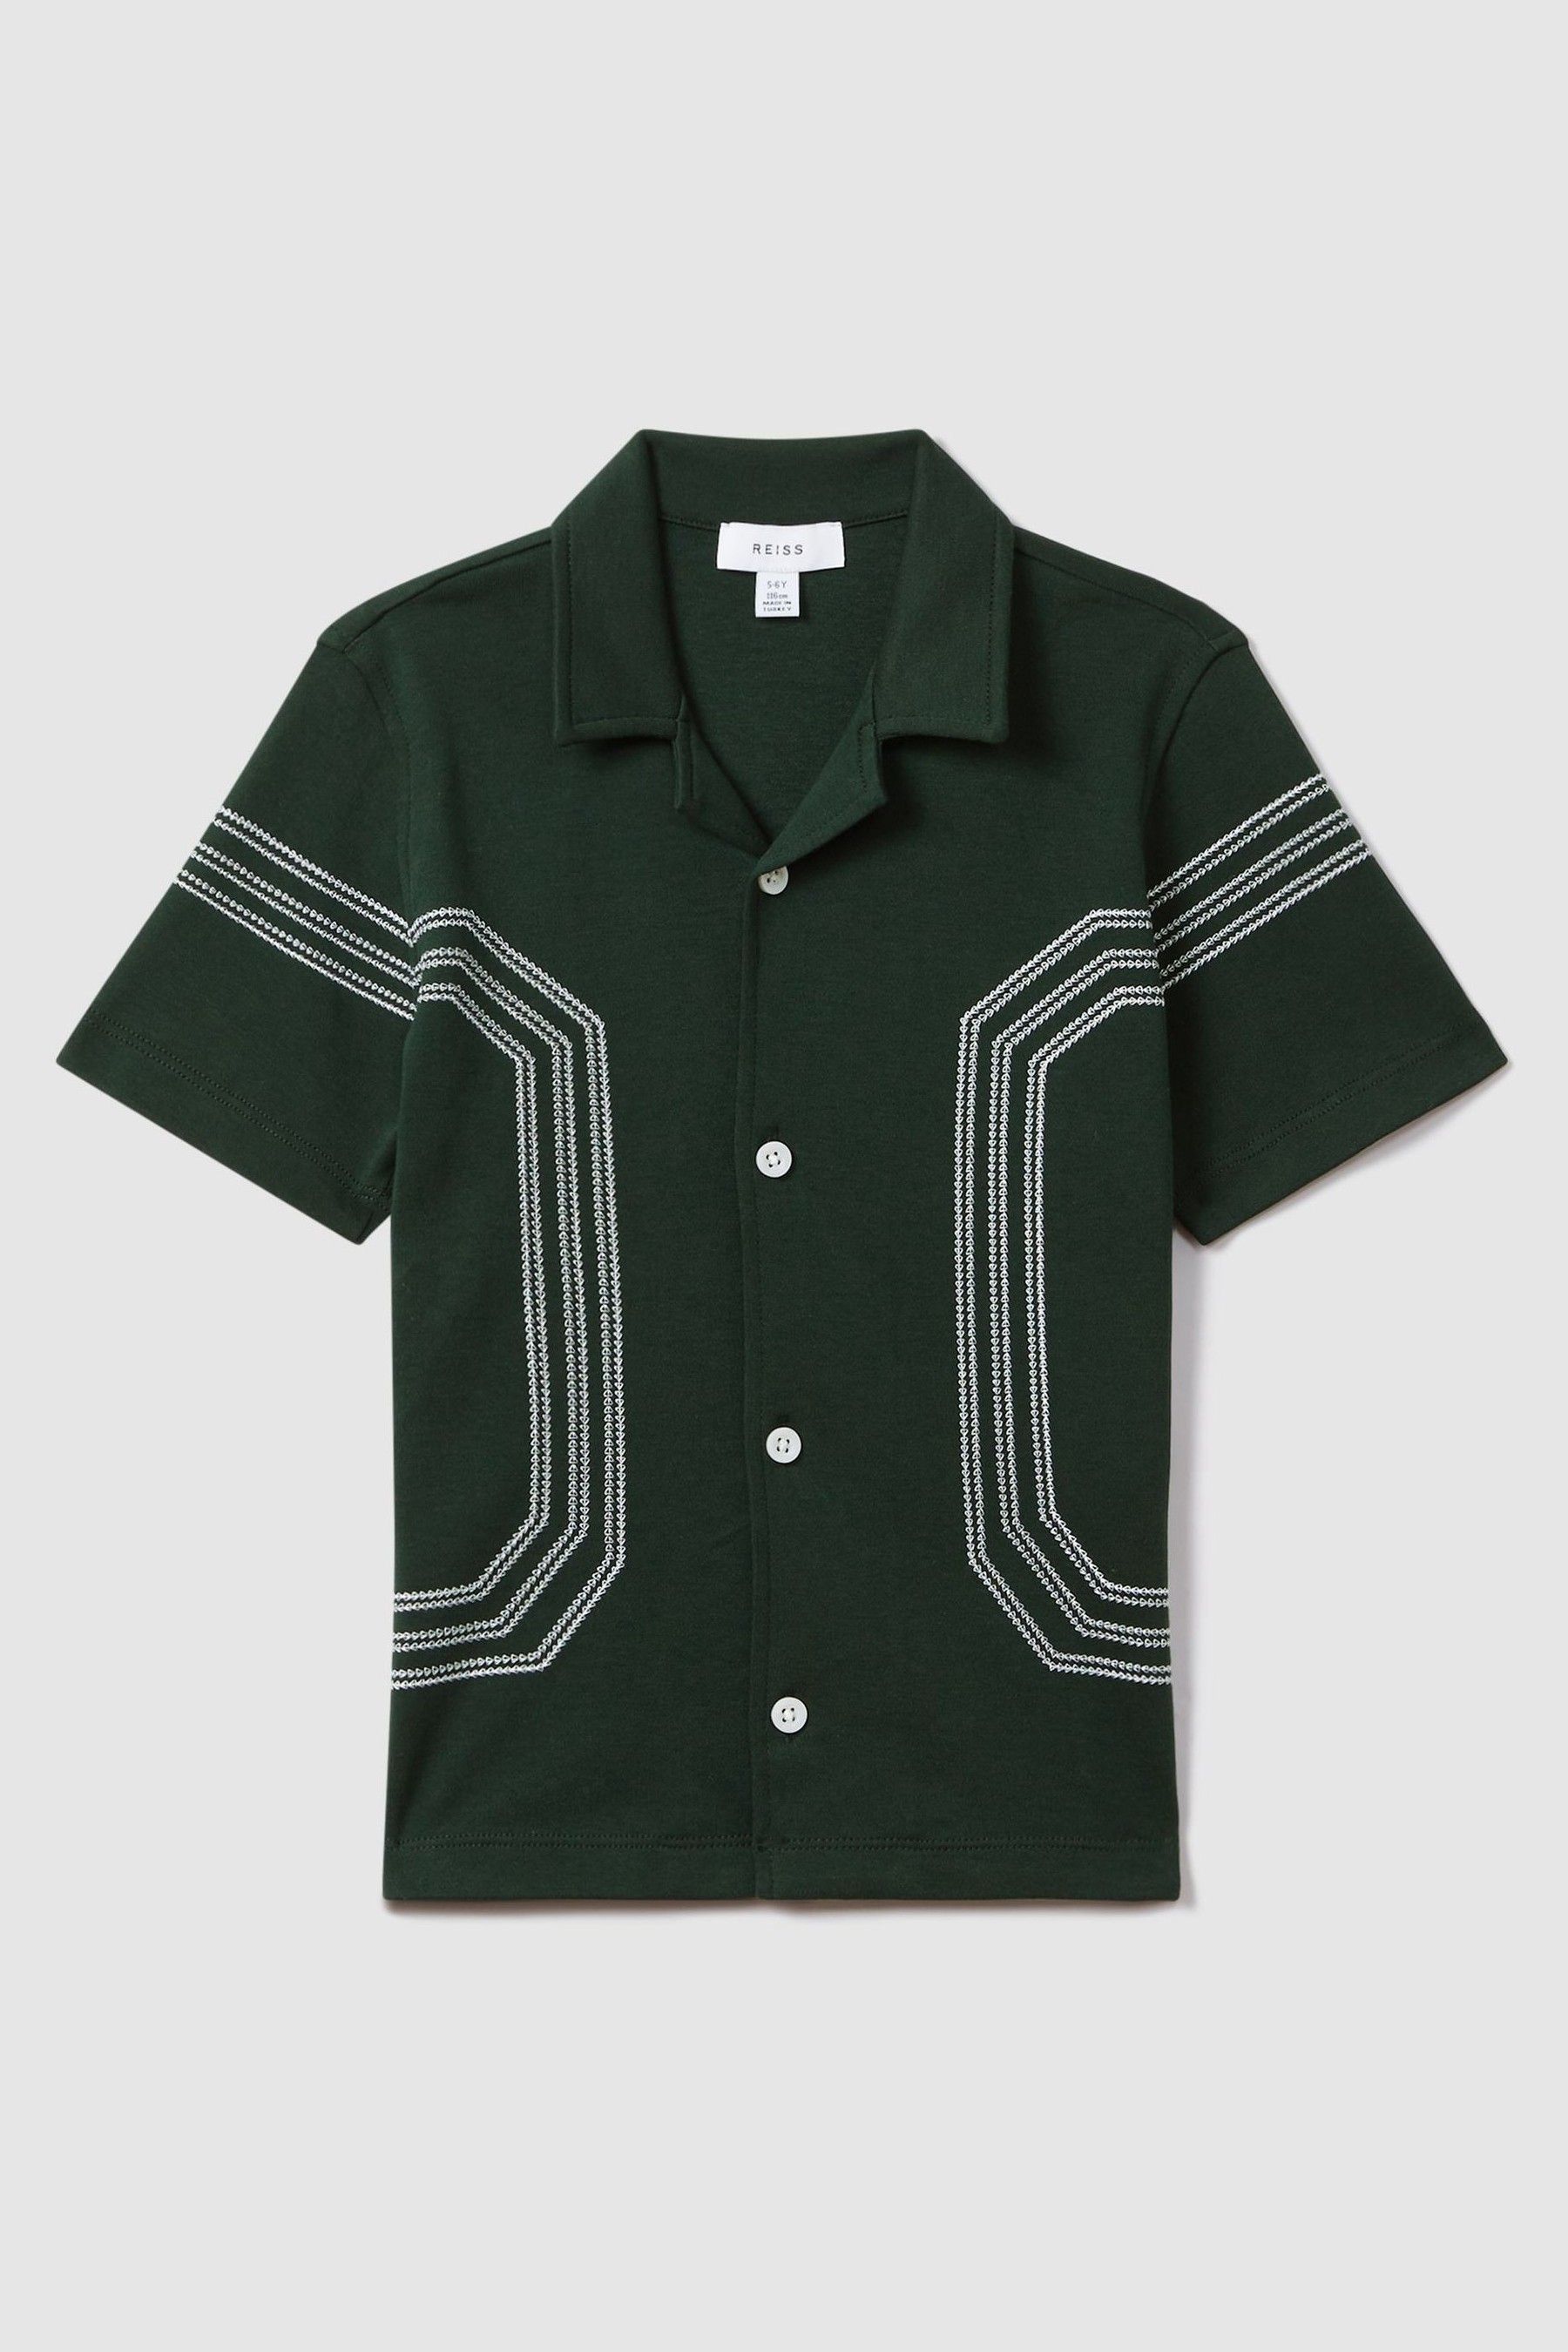 Reiss Arlington - Green Teen Cotton Embroidered Cuban Collar Shirt, Uk 13-14 Yrs